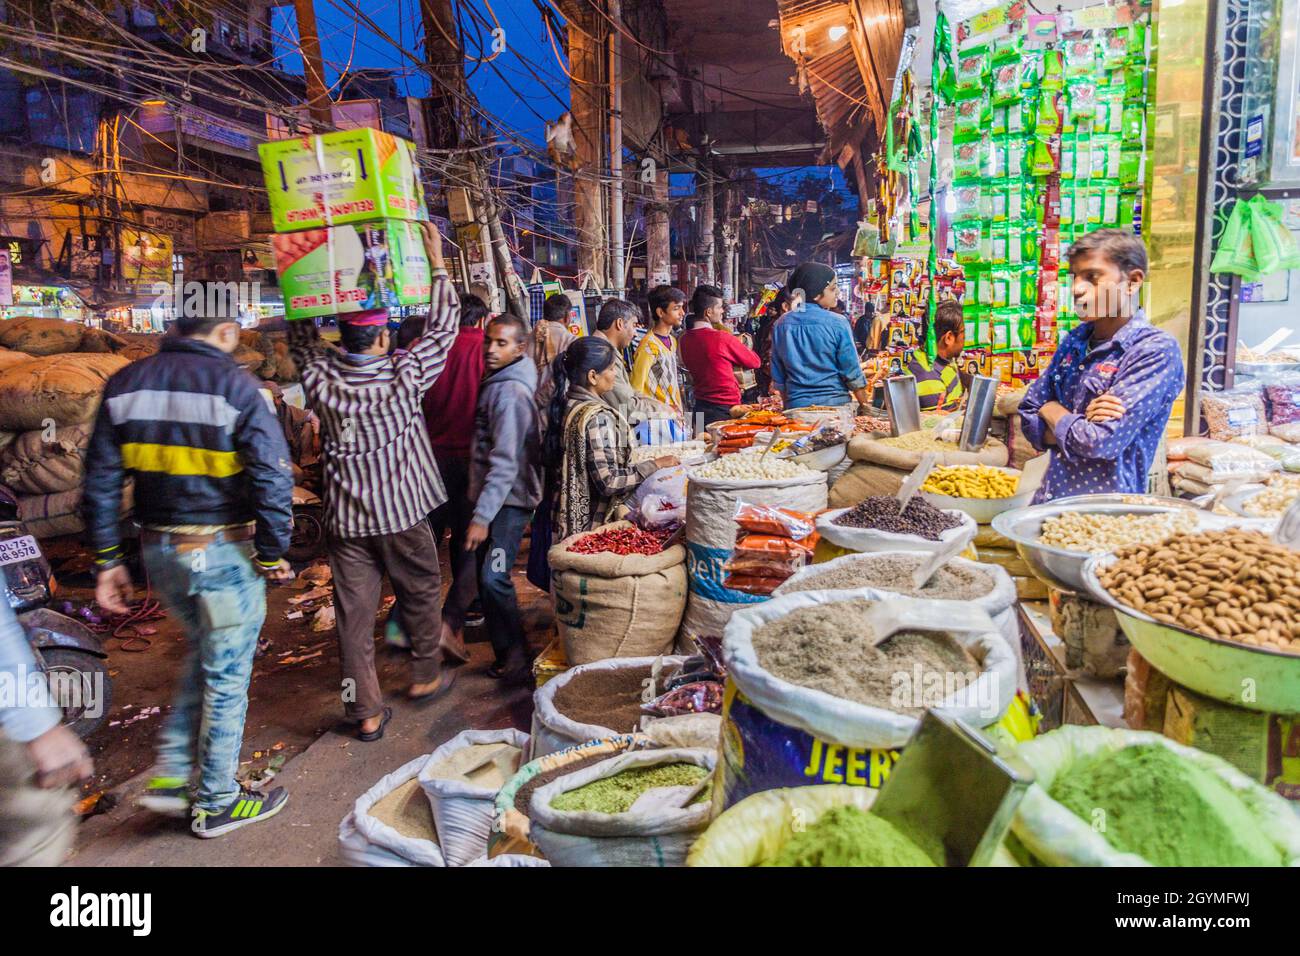 DELHI, INDIEN - 24. JANUAR 2017: Abend im Khari Baoli in Delhi, dem größten Gewürzgroßmarkt Asiens. Stockfoto